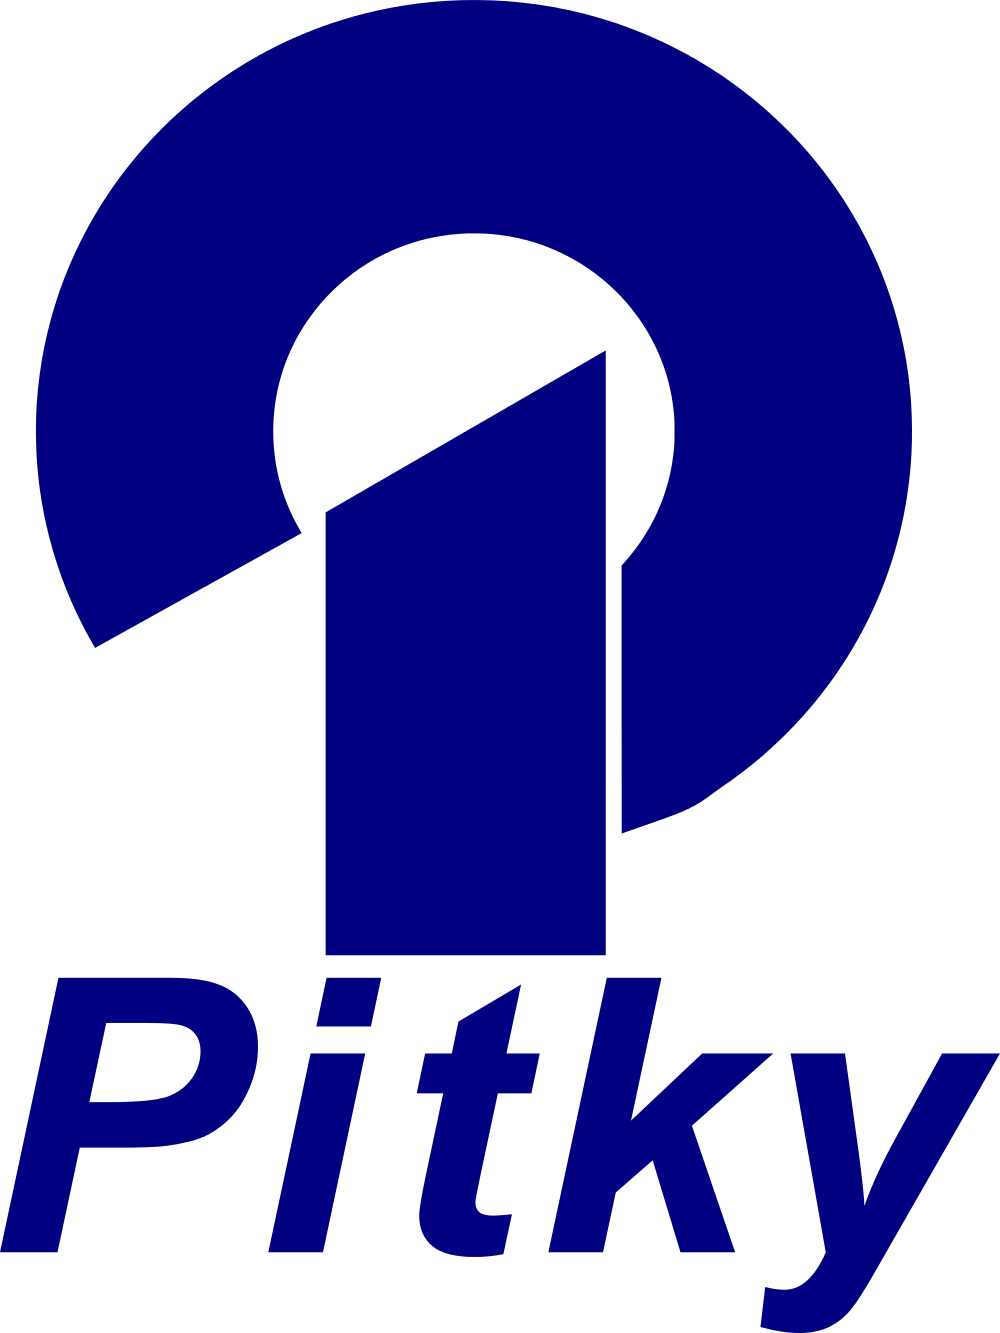 Pitkyn logo